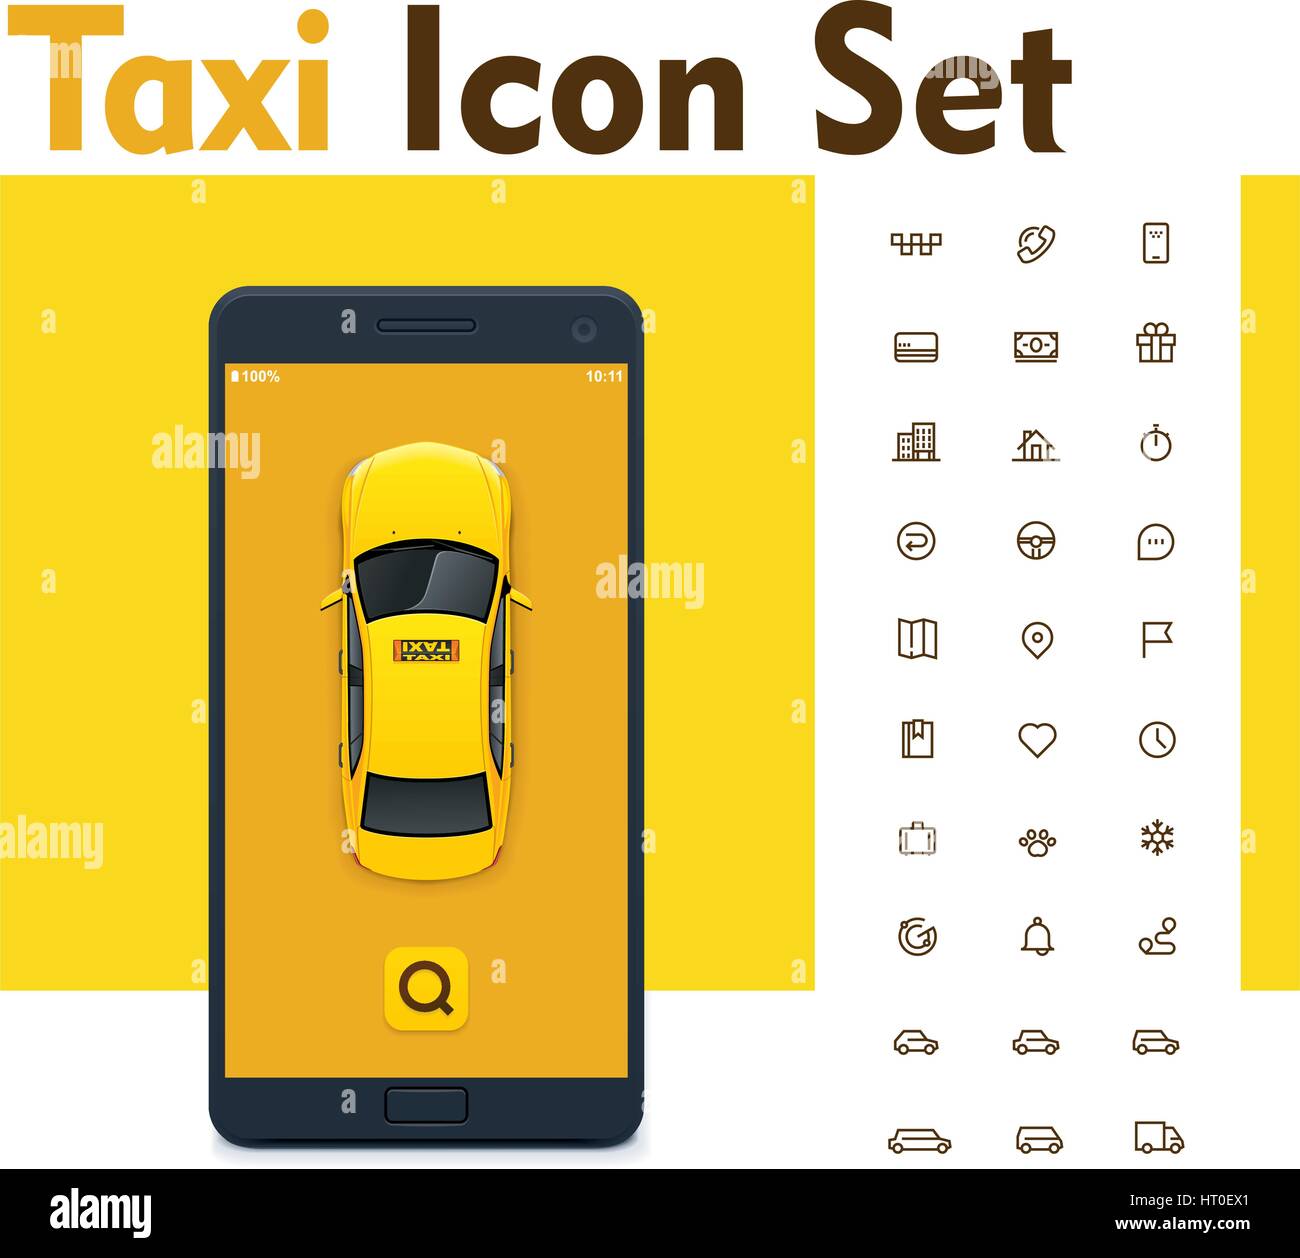 Taxi vecteur mobile app icon set Illustration de Vecteur